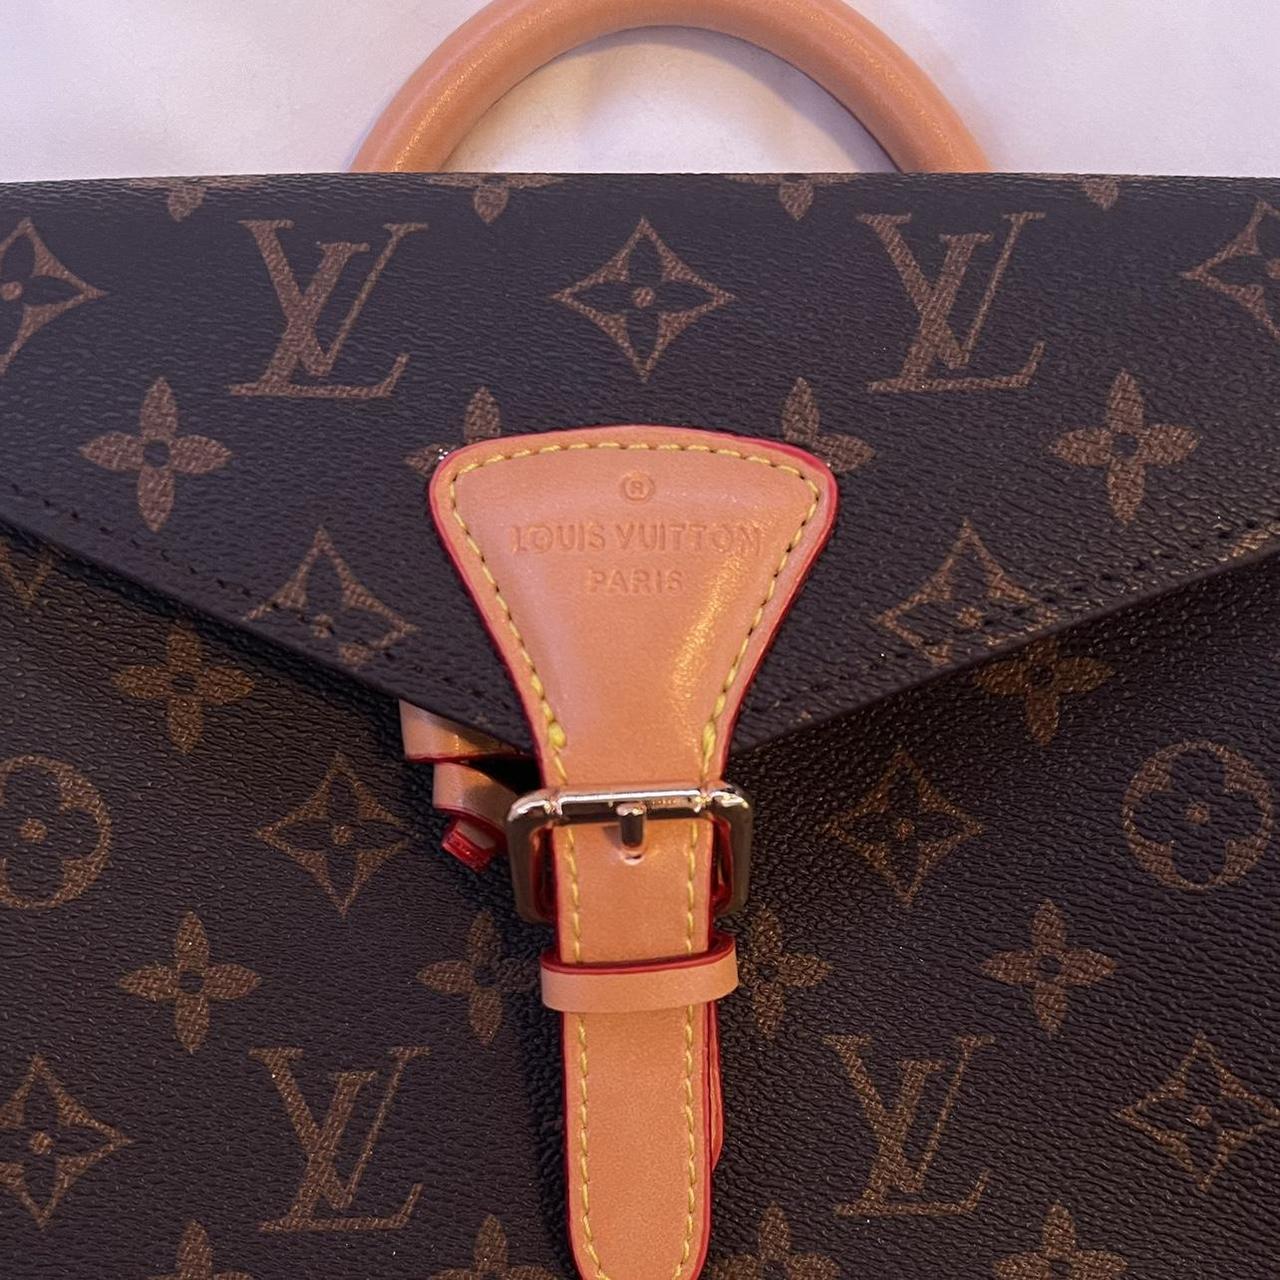 Shop Louis Vuitton Montsouris bb (M45502) by えぷた